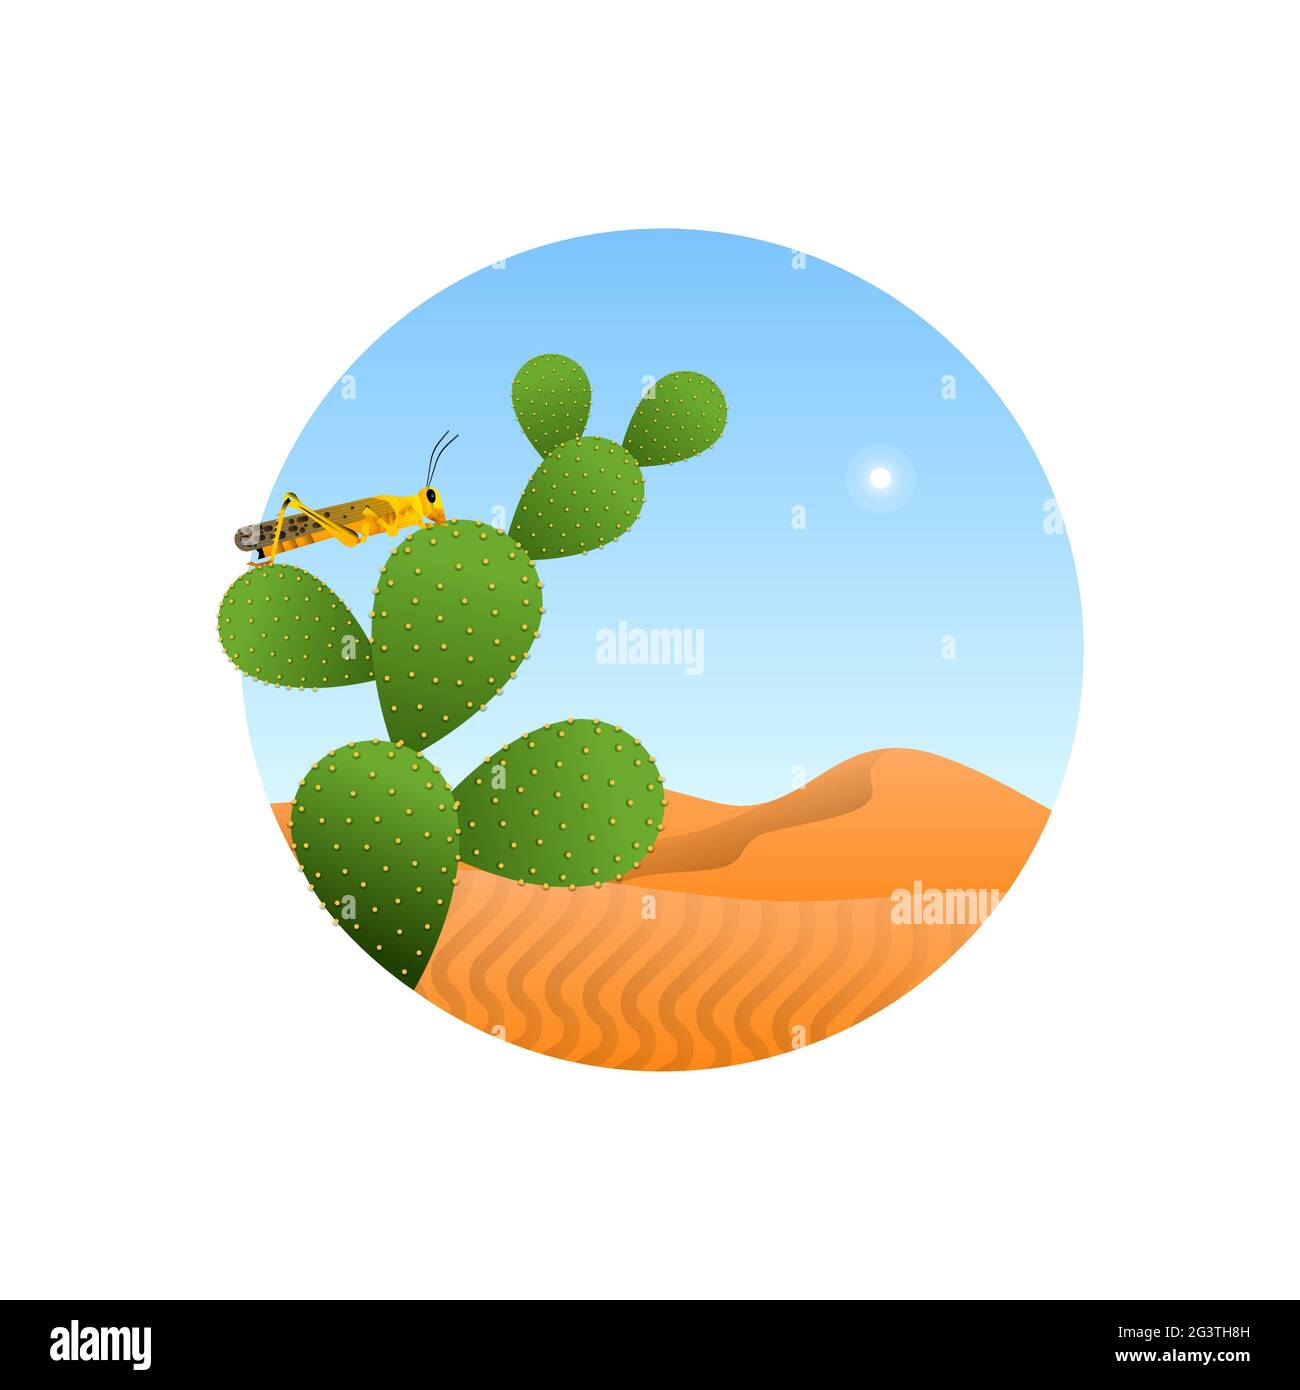 Wildheuschreckeninsekt in Wüstenlandschaft Illustration auf isoliertem weißem Hintergrund. Grasshopper Pest Tierkonzept. Pädagogisches Wildtierdesign, Modus Stock Vektor